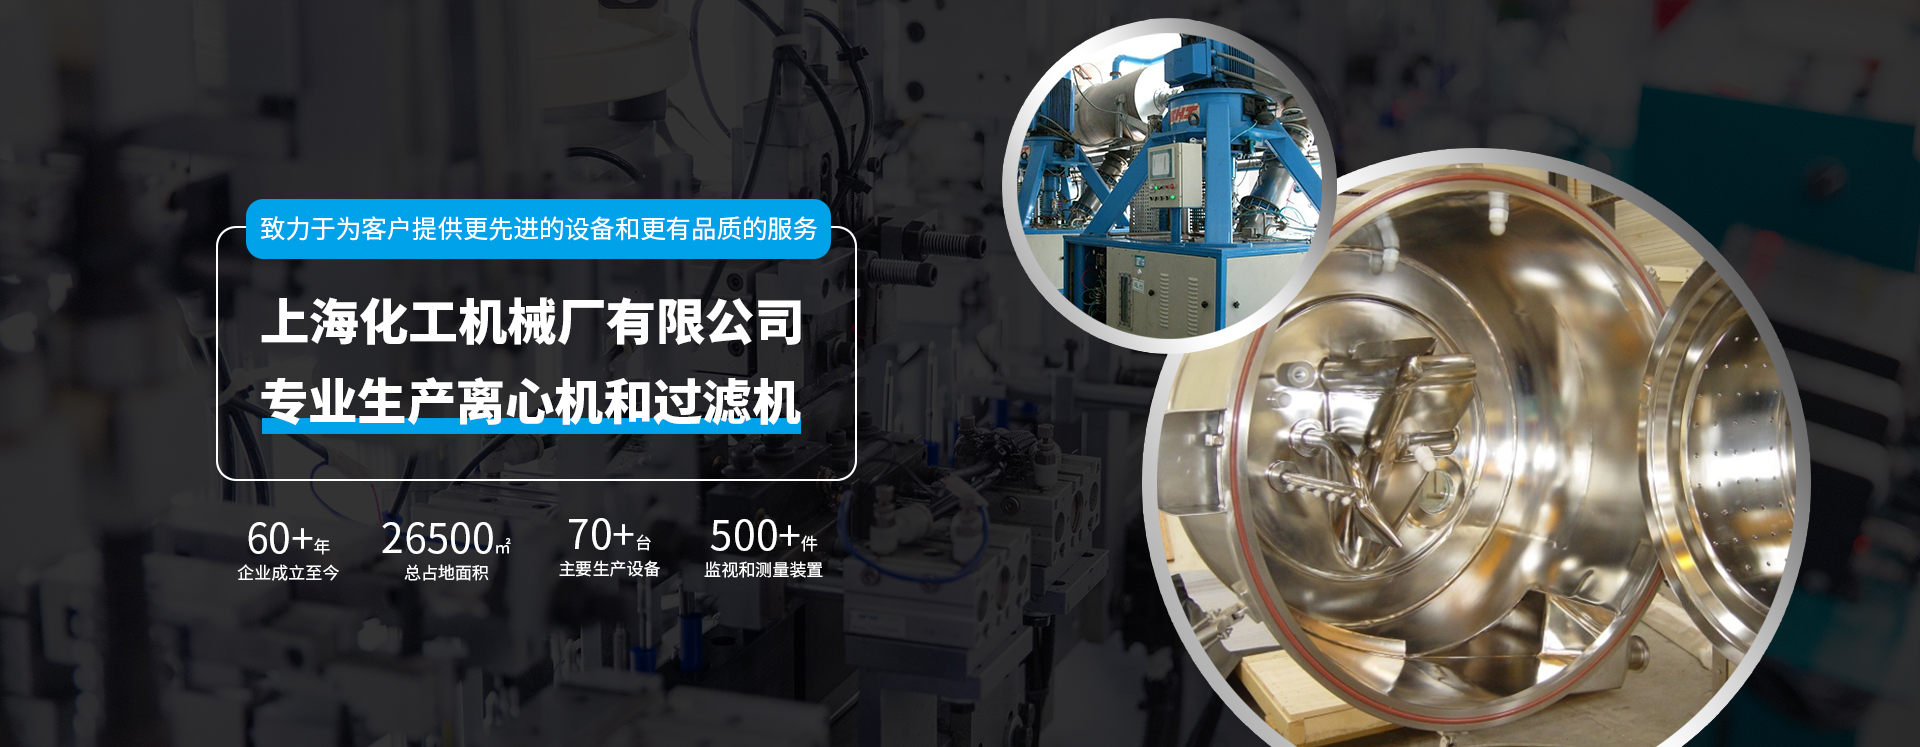 上海化工机械厂有限公司